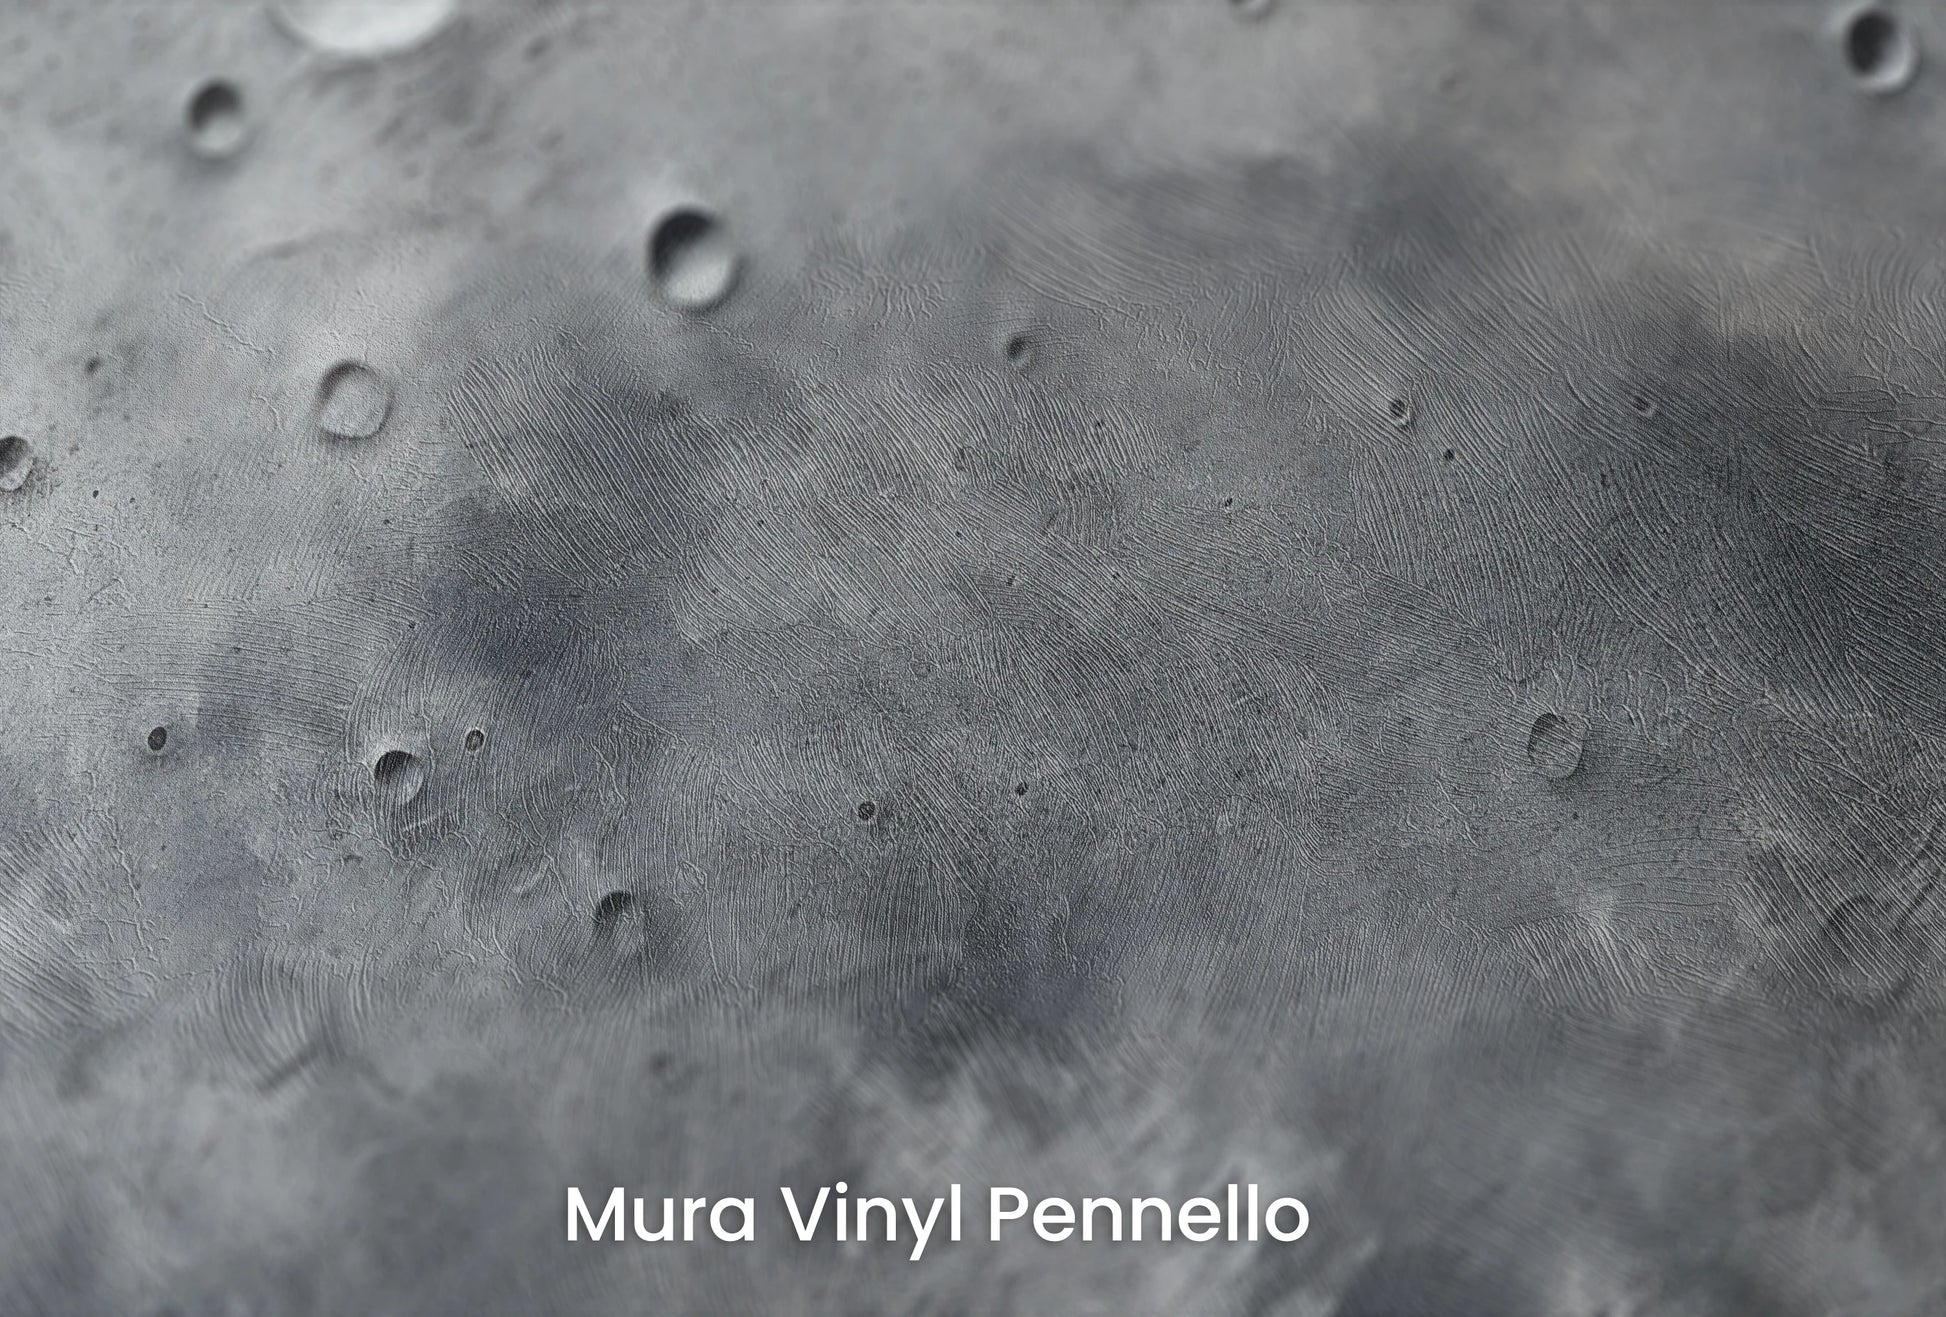 Zbliżenie na artystyczną fototapetę o nazwie Pluto's Mystery na podłożu Mura Vinyl Pennello - faktura pociągnięć pędzla malarskiego.